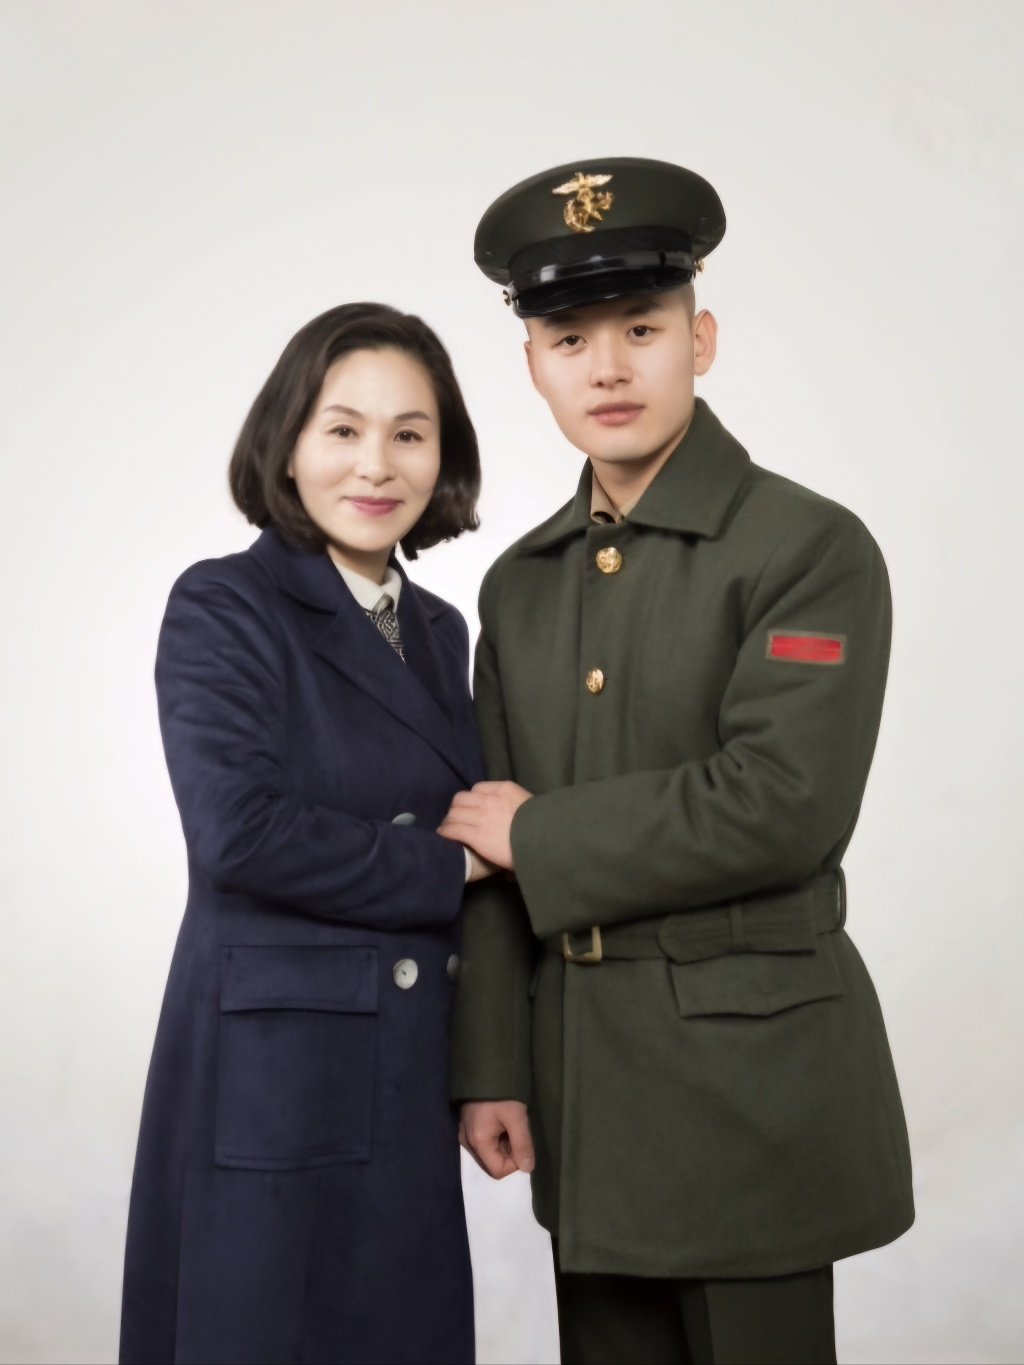 2019년 군 복무 중 휴가를 나온 아들과 함께. 북한 감옥에서 얼어죽을 뻔했던 아들은 한국에 와서 군면제 혜택을 스스로 포기하고 해병대에 자원입대했다.